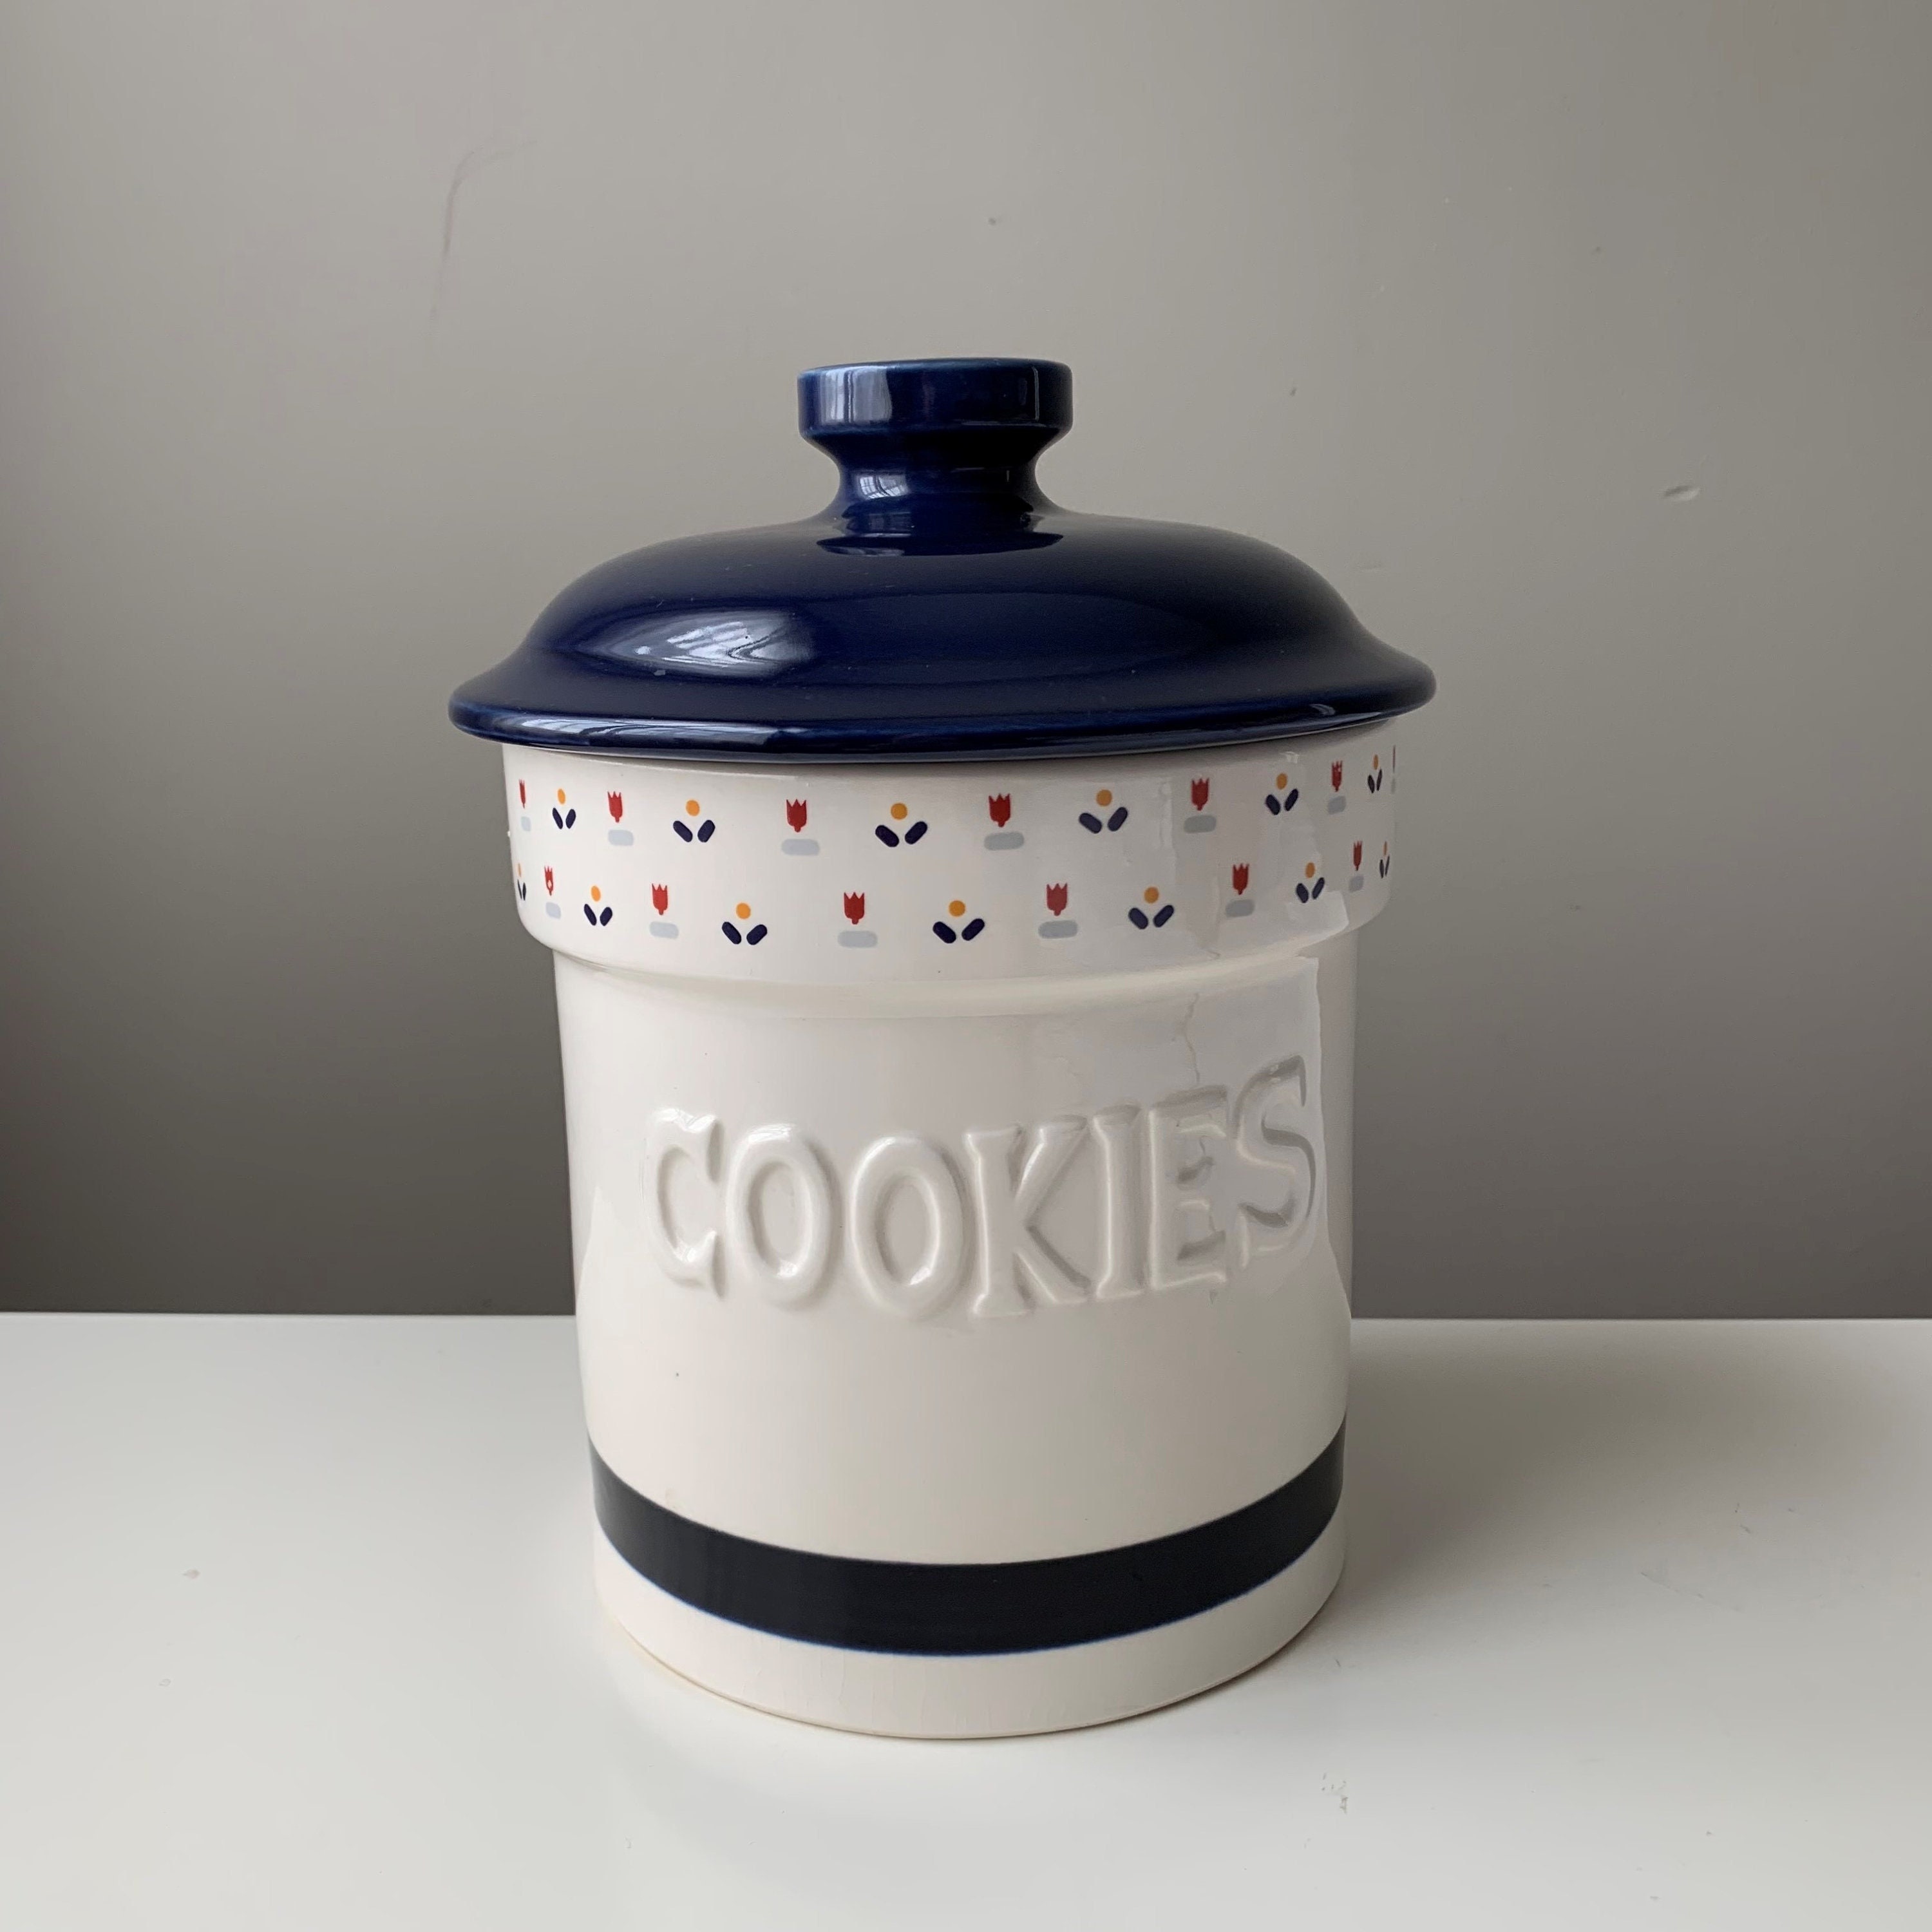 Outshine Vintage White Metal Cookie Jar & Cookie Cutters with Air